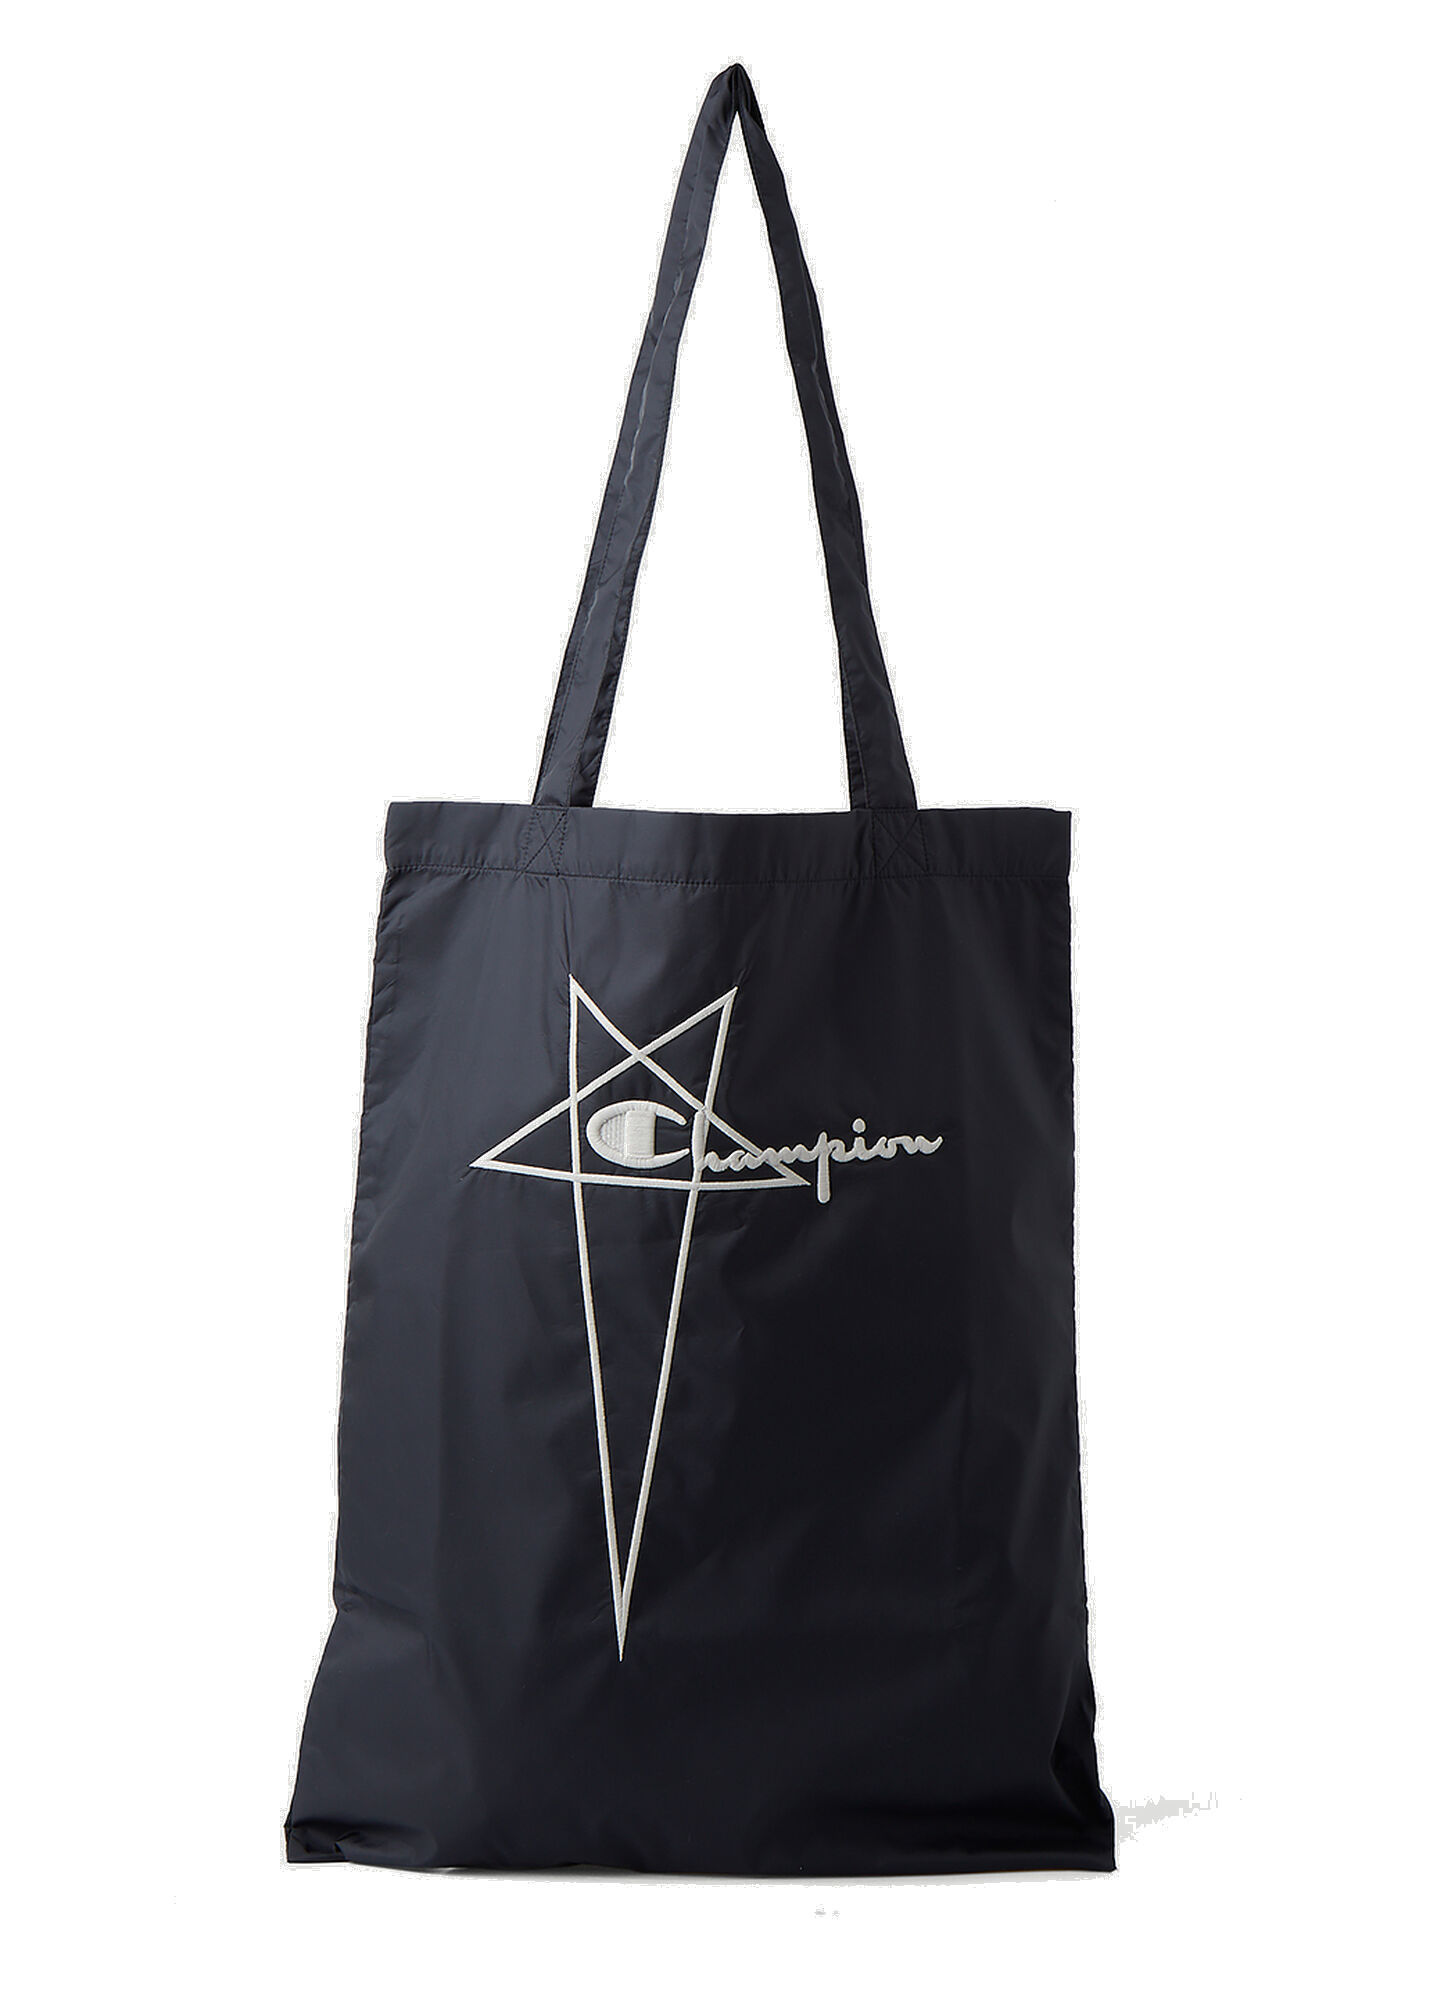 Photo: Shopper Tote Bag in Black